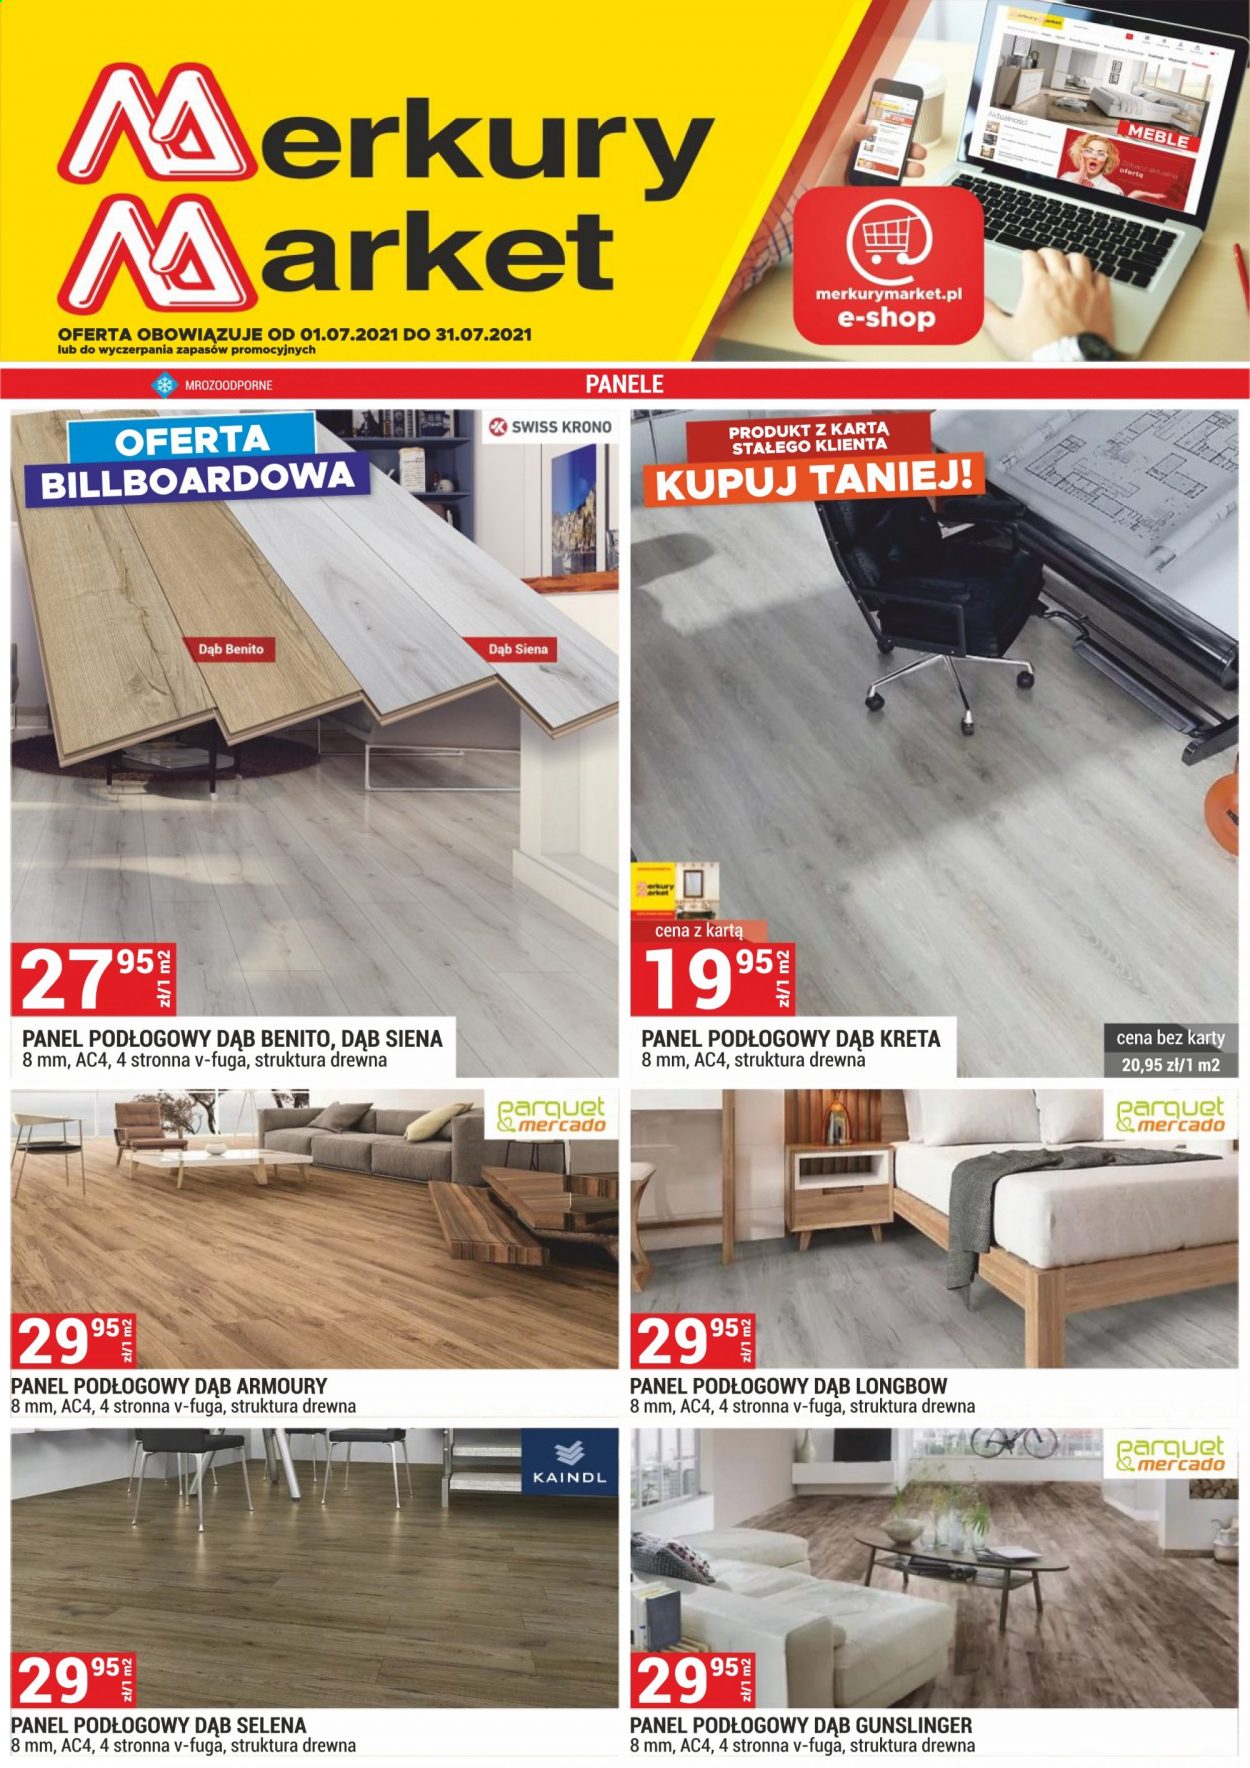 Gazetka Merkury Market - 1.07.2021 - 31.07.2021 - Produkty w akcji - panel podłogowy. Strona 1.